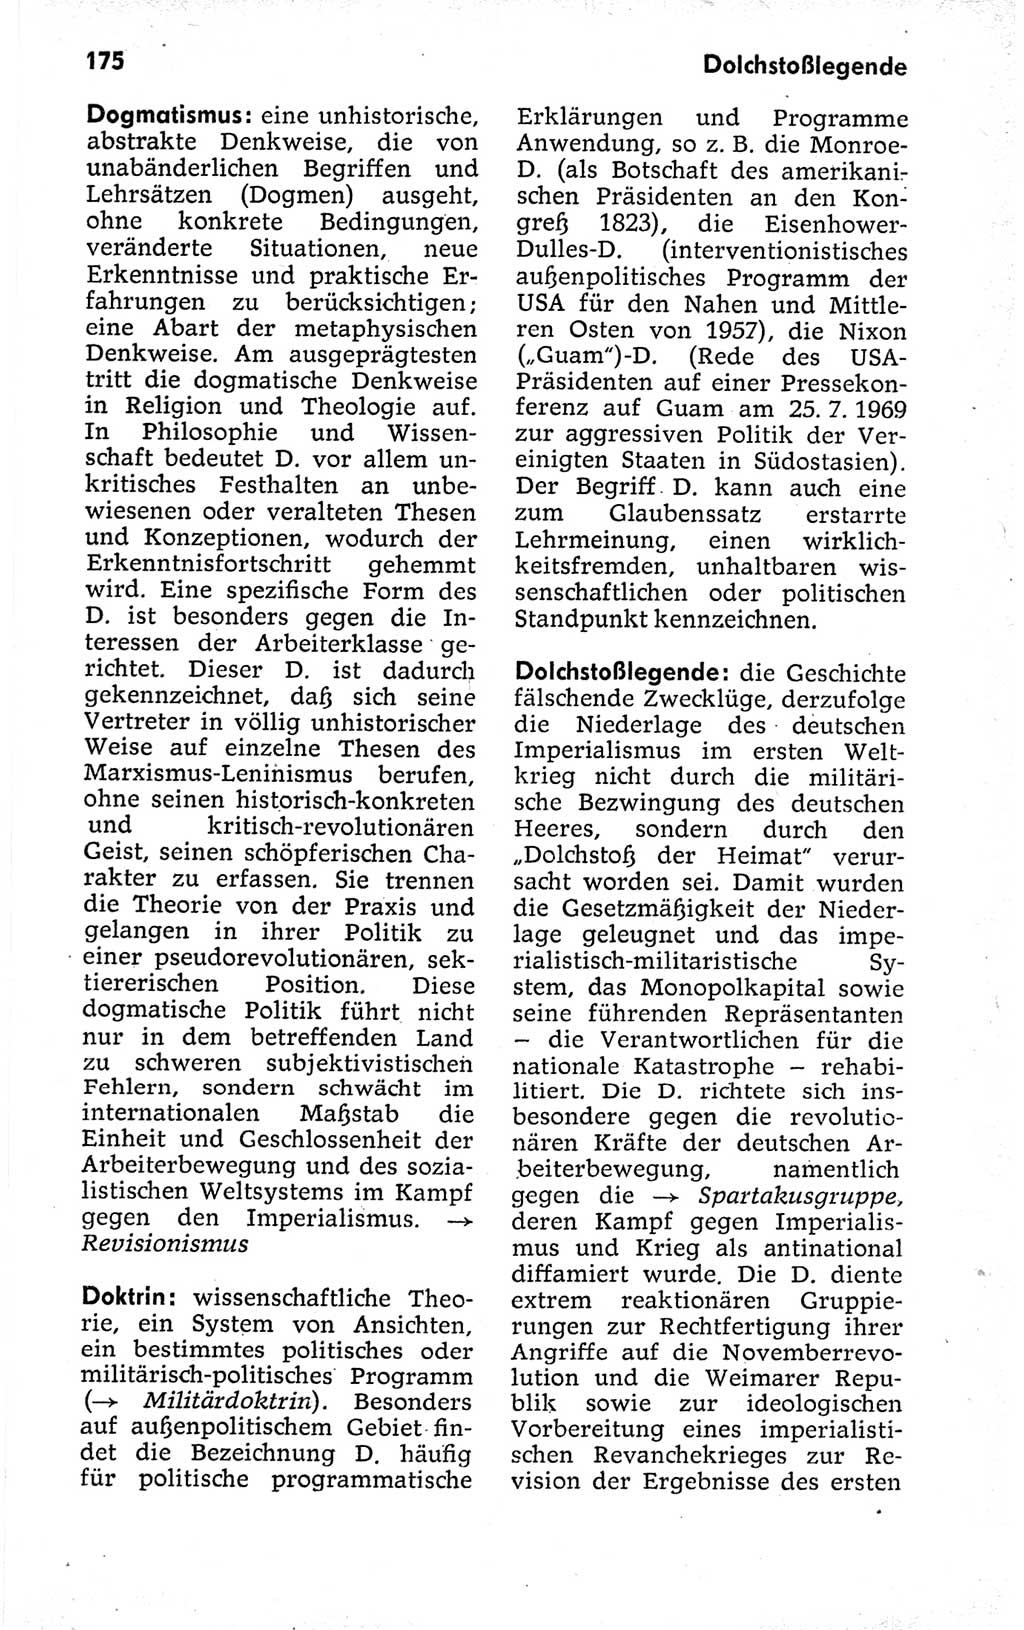 Kleines politisches Wörterbuch [Deutsche Demokratische Republik (DDR)] 1973, Seite 175 (Kl. pol. Wb. DDR 1973, S. 175)